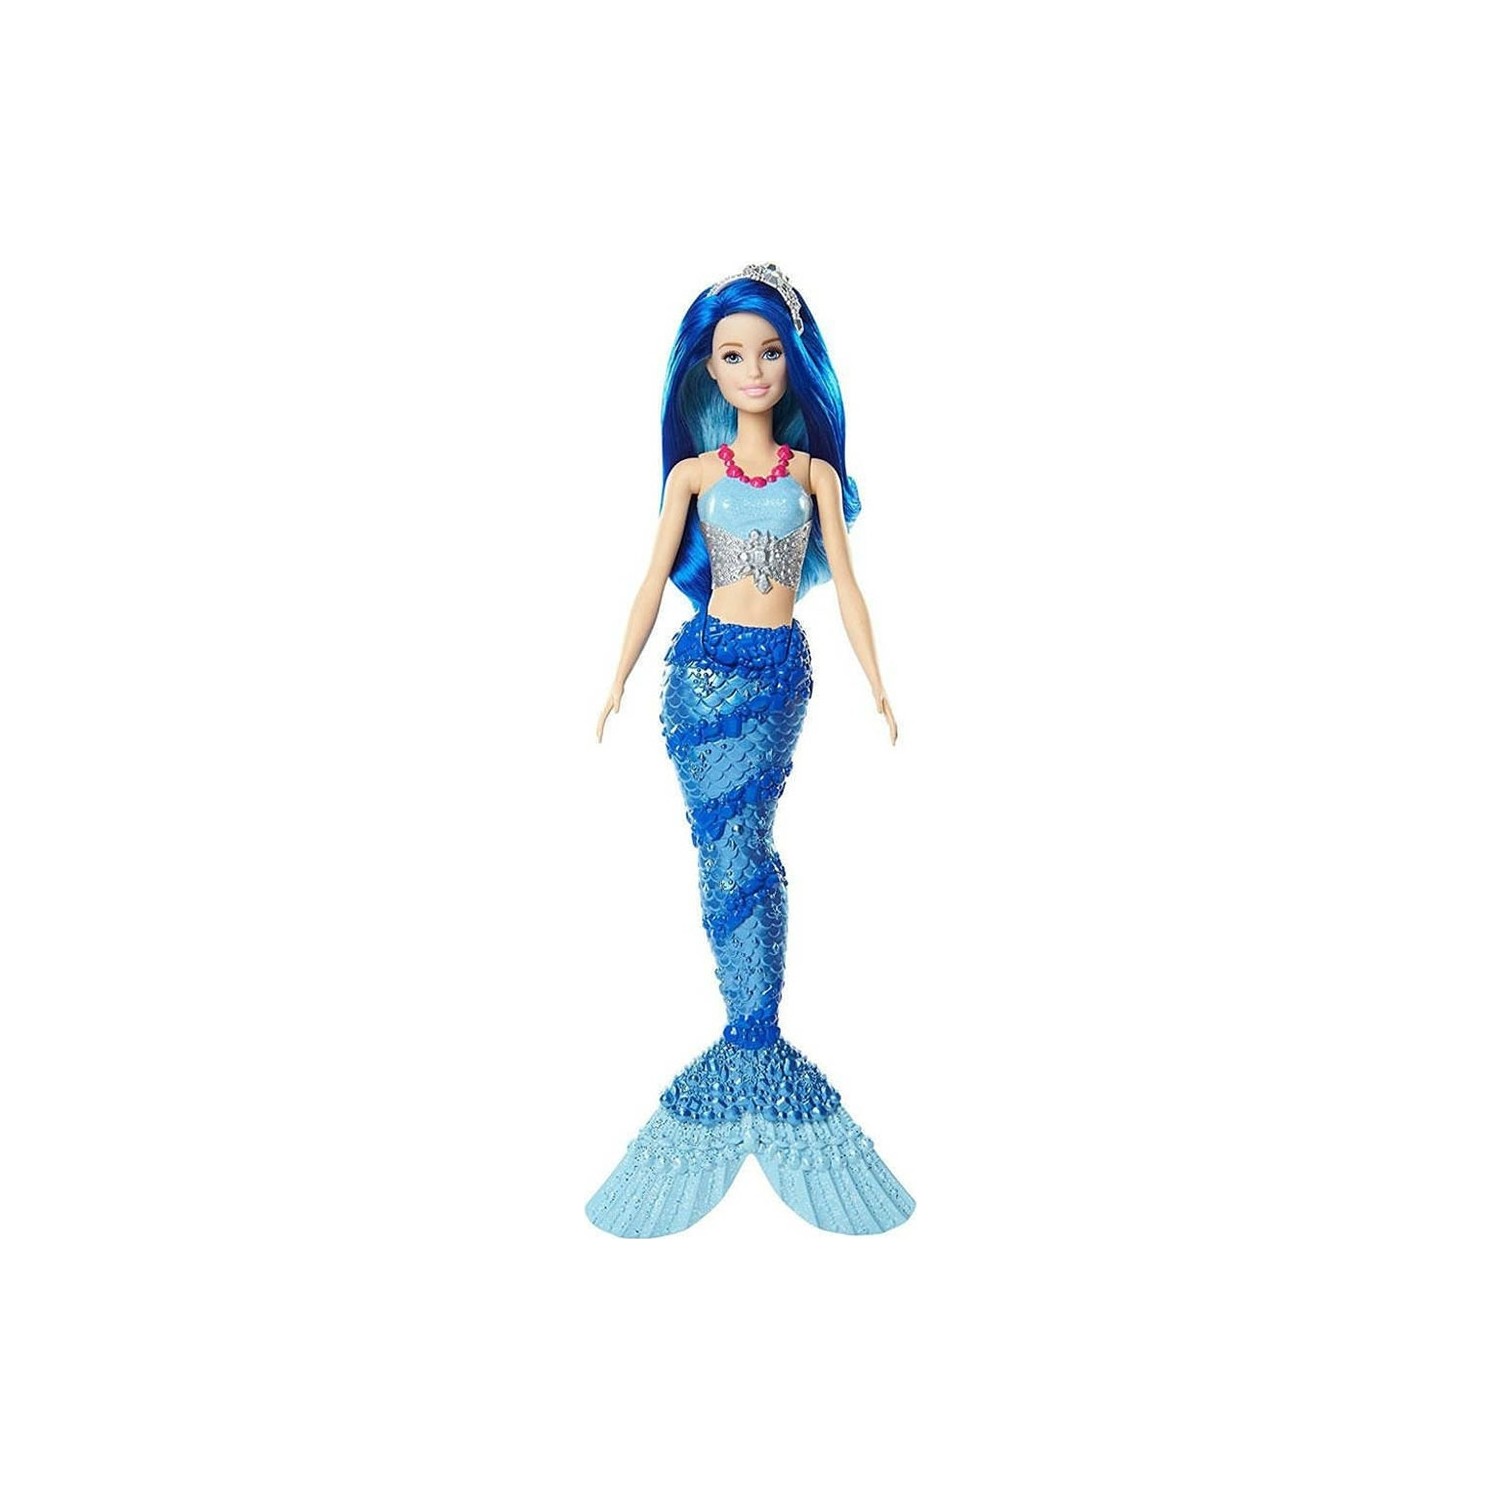 Кукла Barbie Dreamtopia Mermaid FJC92 куклы barbie русалки dreamtopia hgr09